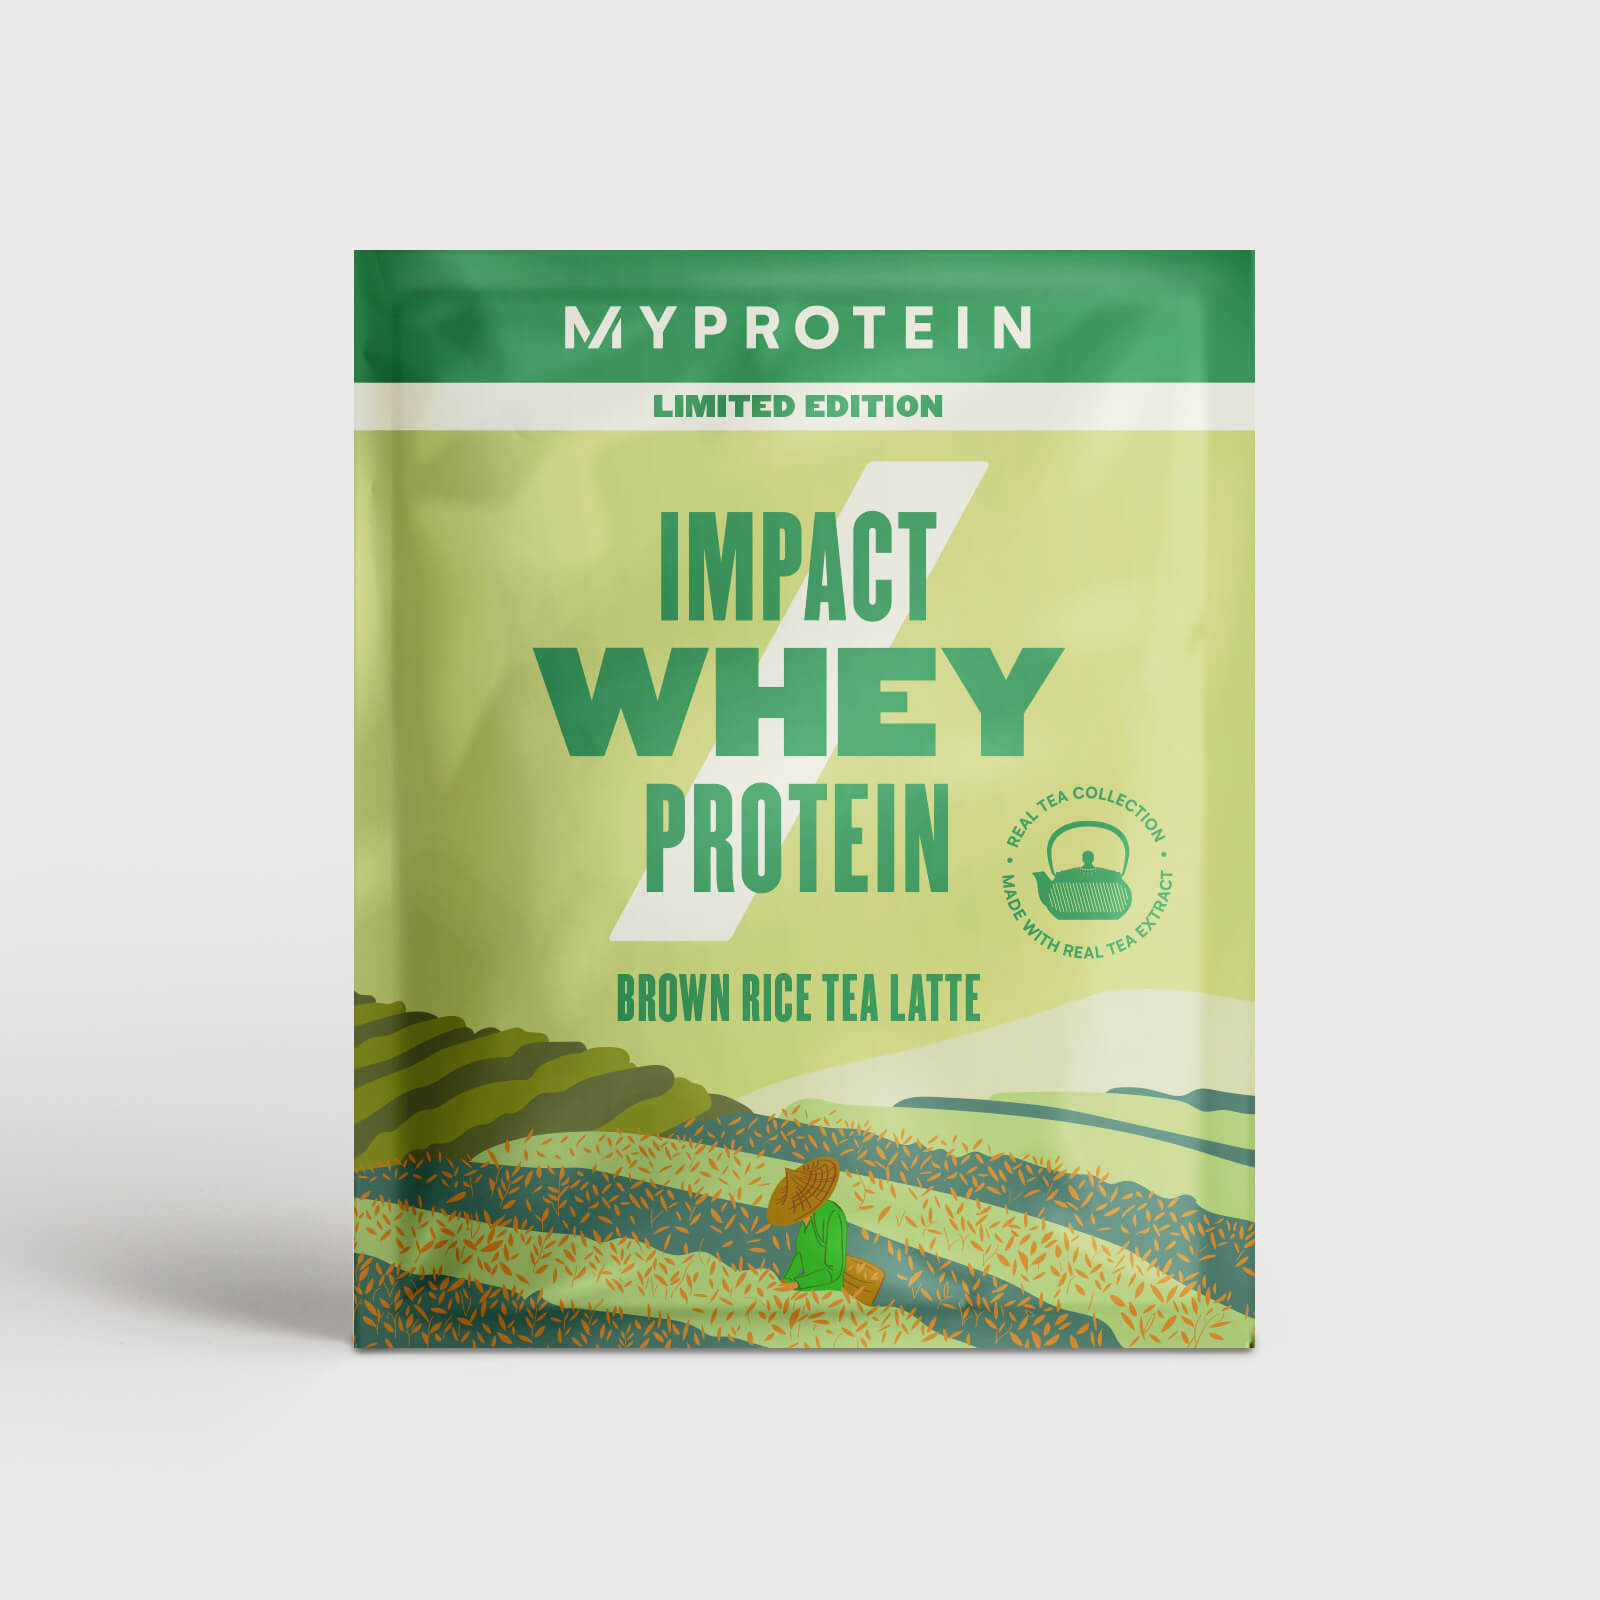 Impact Whey Protein (Probe) - 25g - Brown Rice Tea Latte